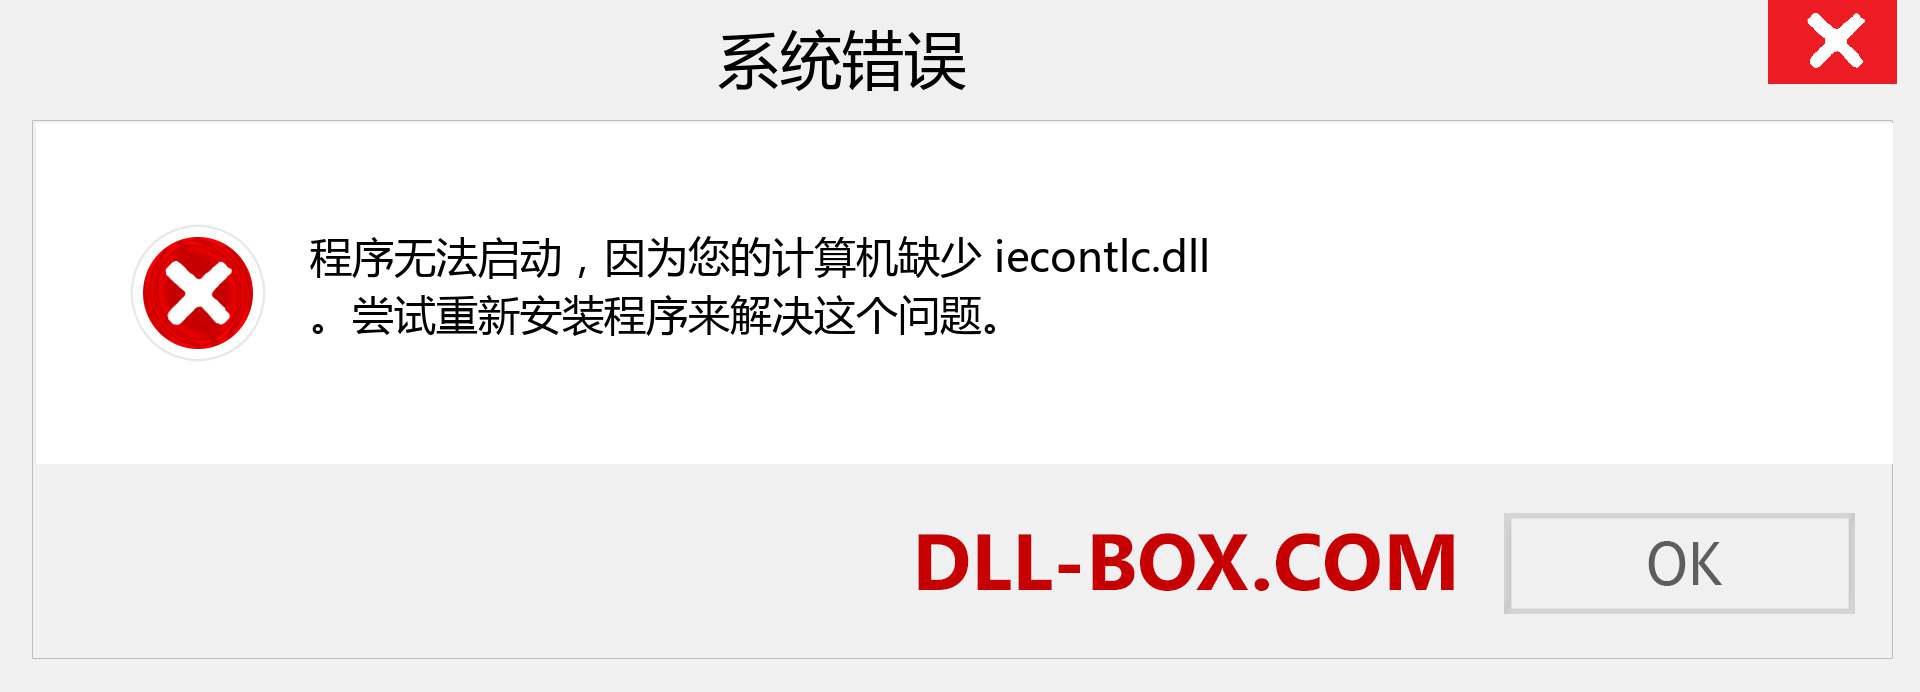 iecontlc.dll 文件丢失？。 适用于 Windows 7、8、10 的下载 - 修复 Windows、照片、图像上的 iecontlc dll 丢失错误